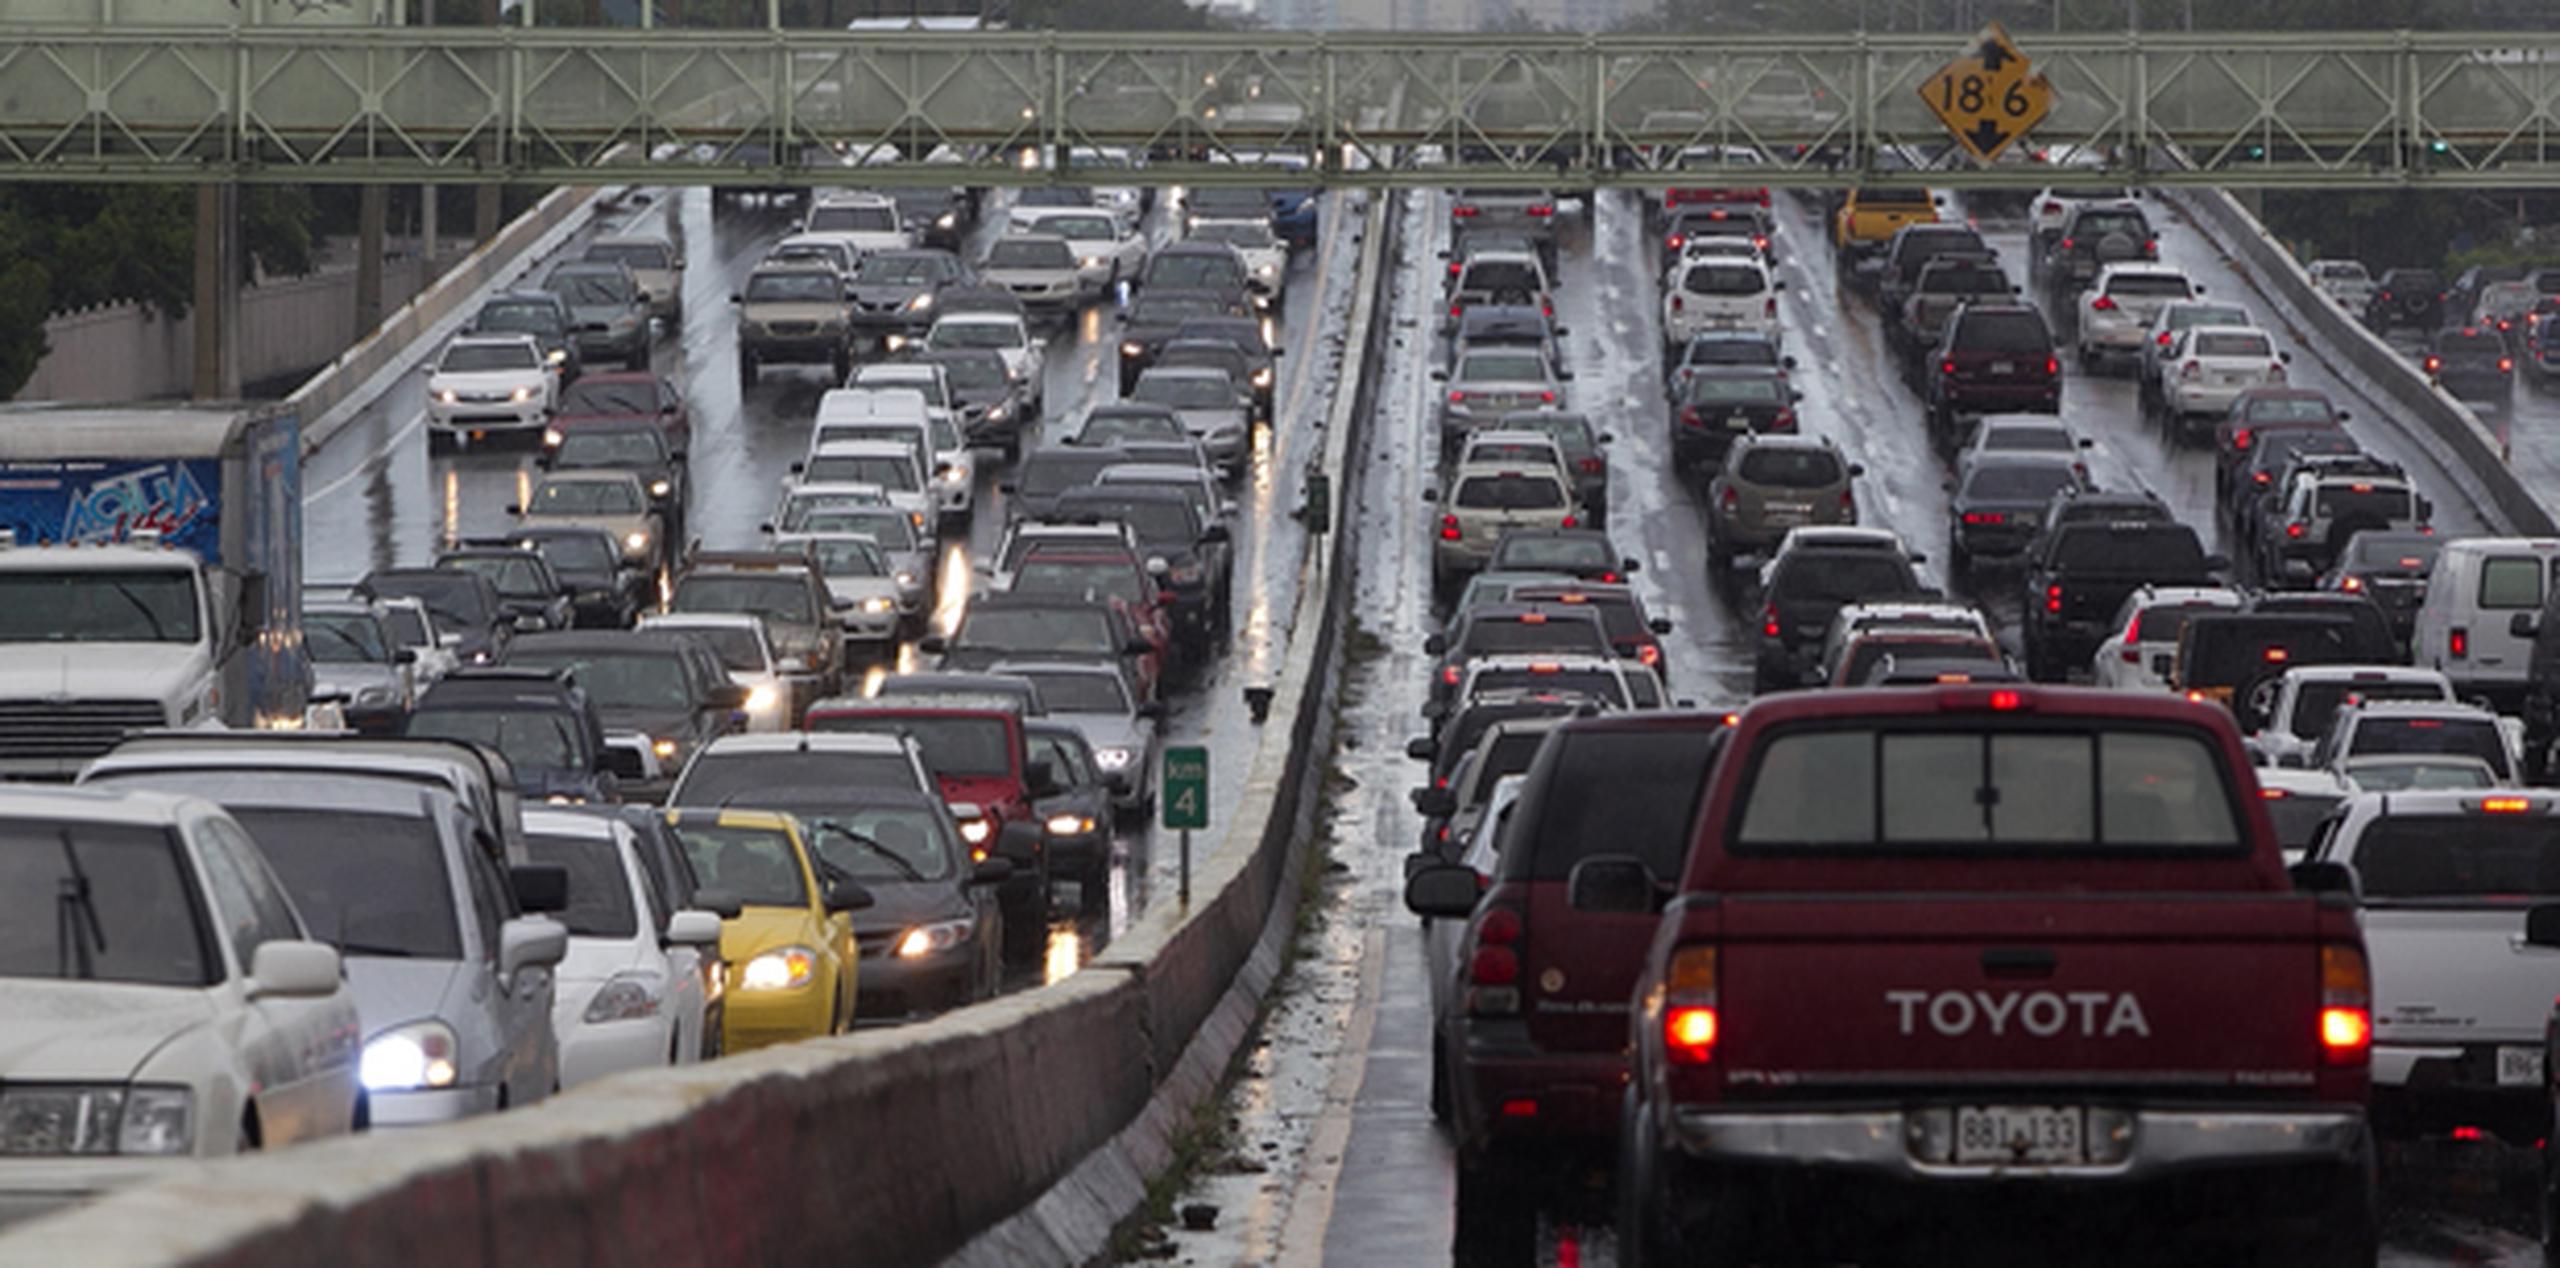 Según The WorldFactbook, ese montón de vehículos que se mueven en nuestro país, utilizan 26,862 kilómetros de vías pavimentadas, entre las que hay 454 kilómetros de expresos. (Archivo)